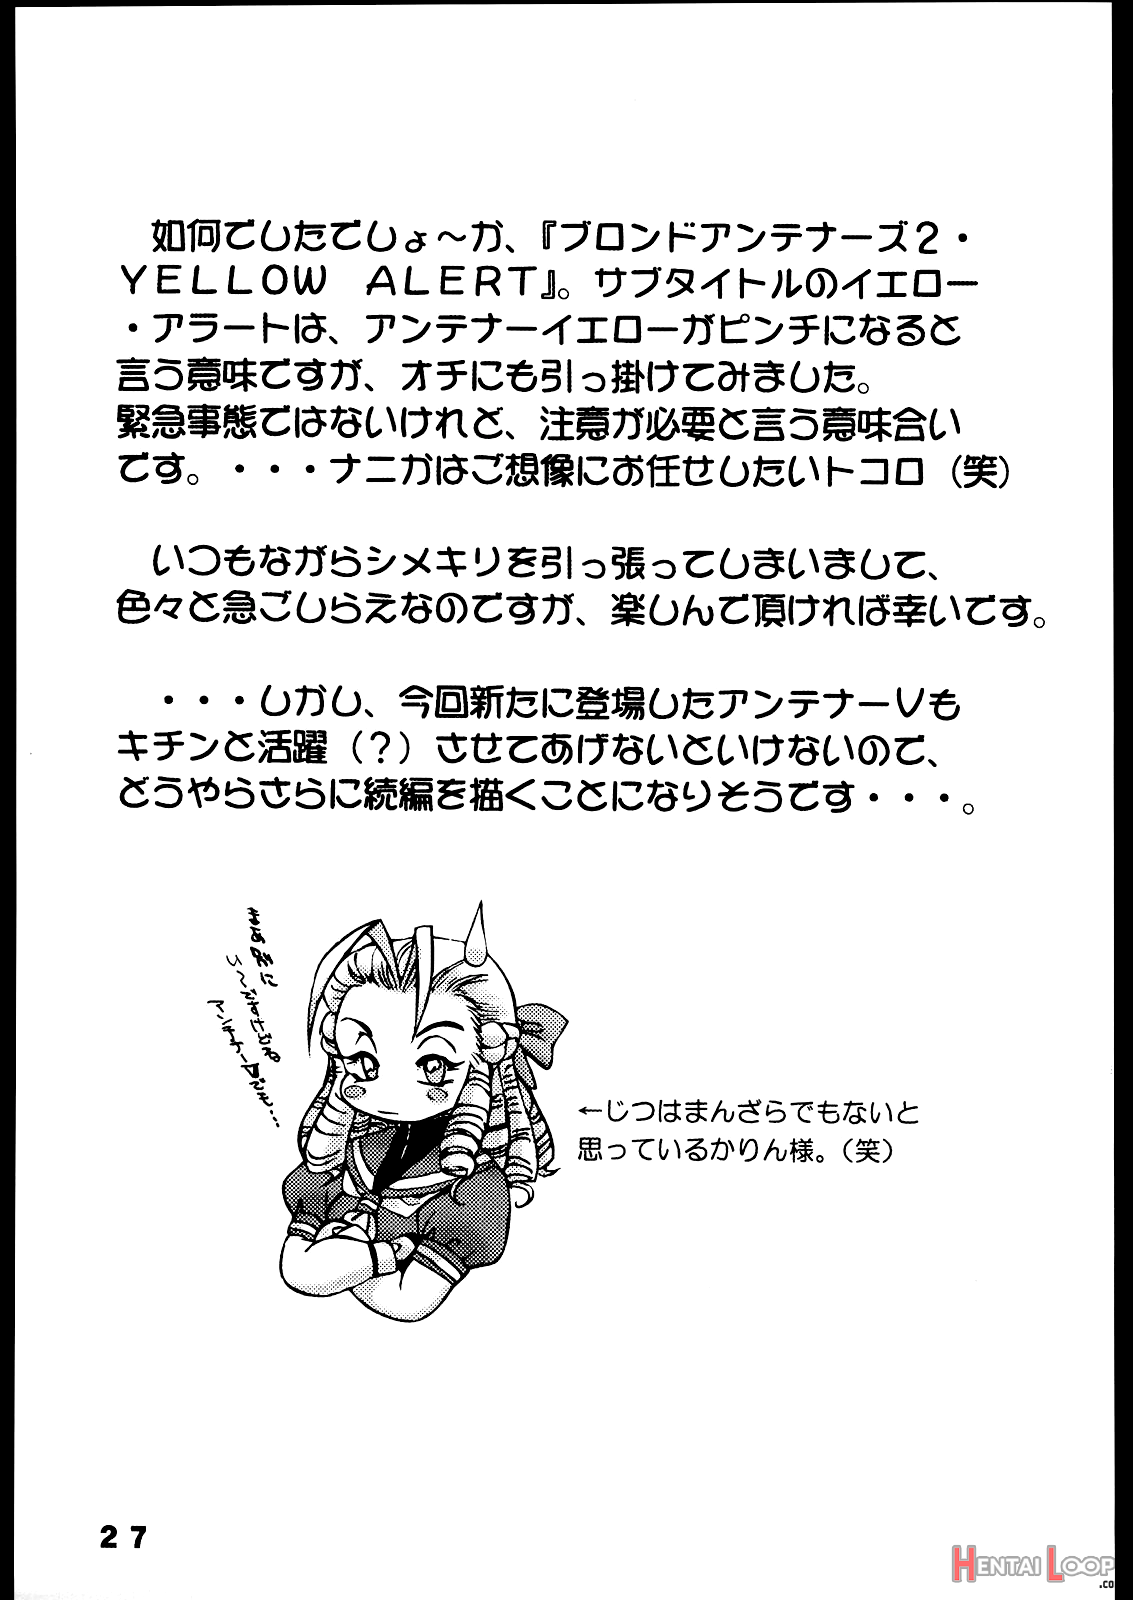 Nousatsu Sentai Blonde Antennas 2 - Yellow Alert page 26